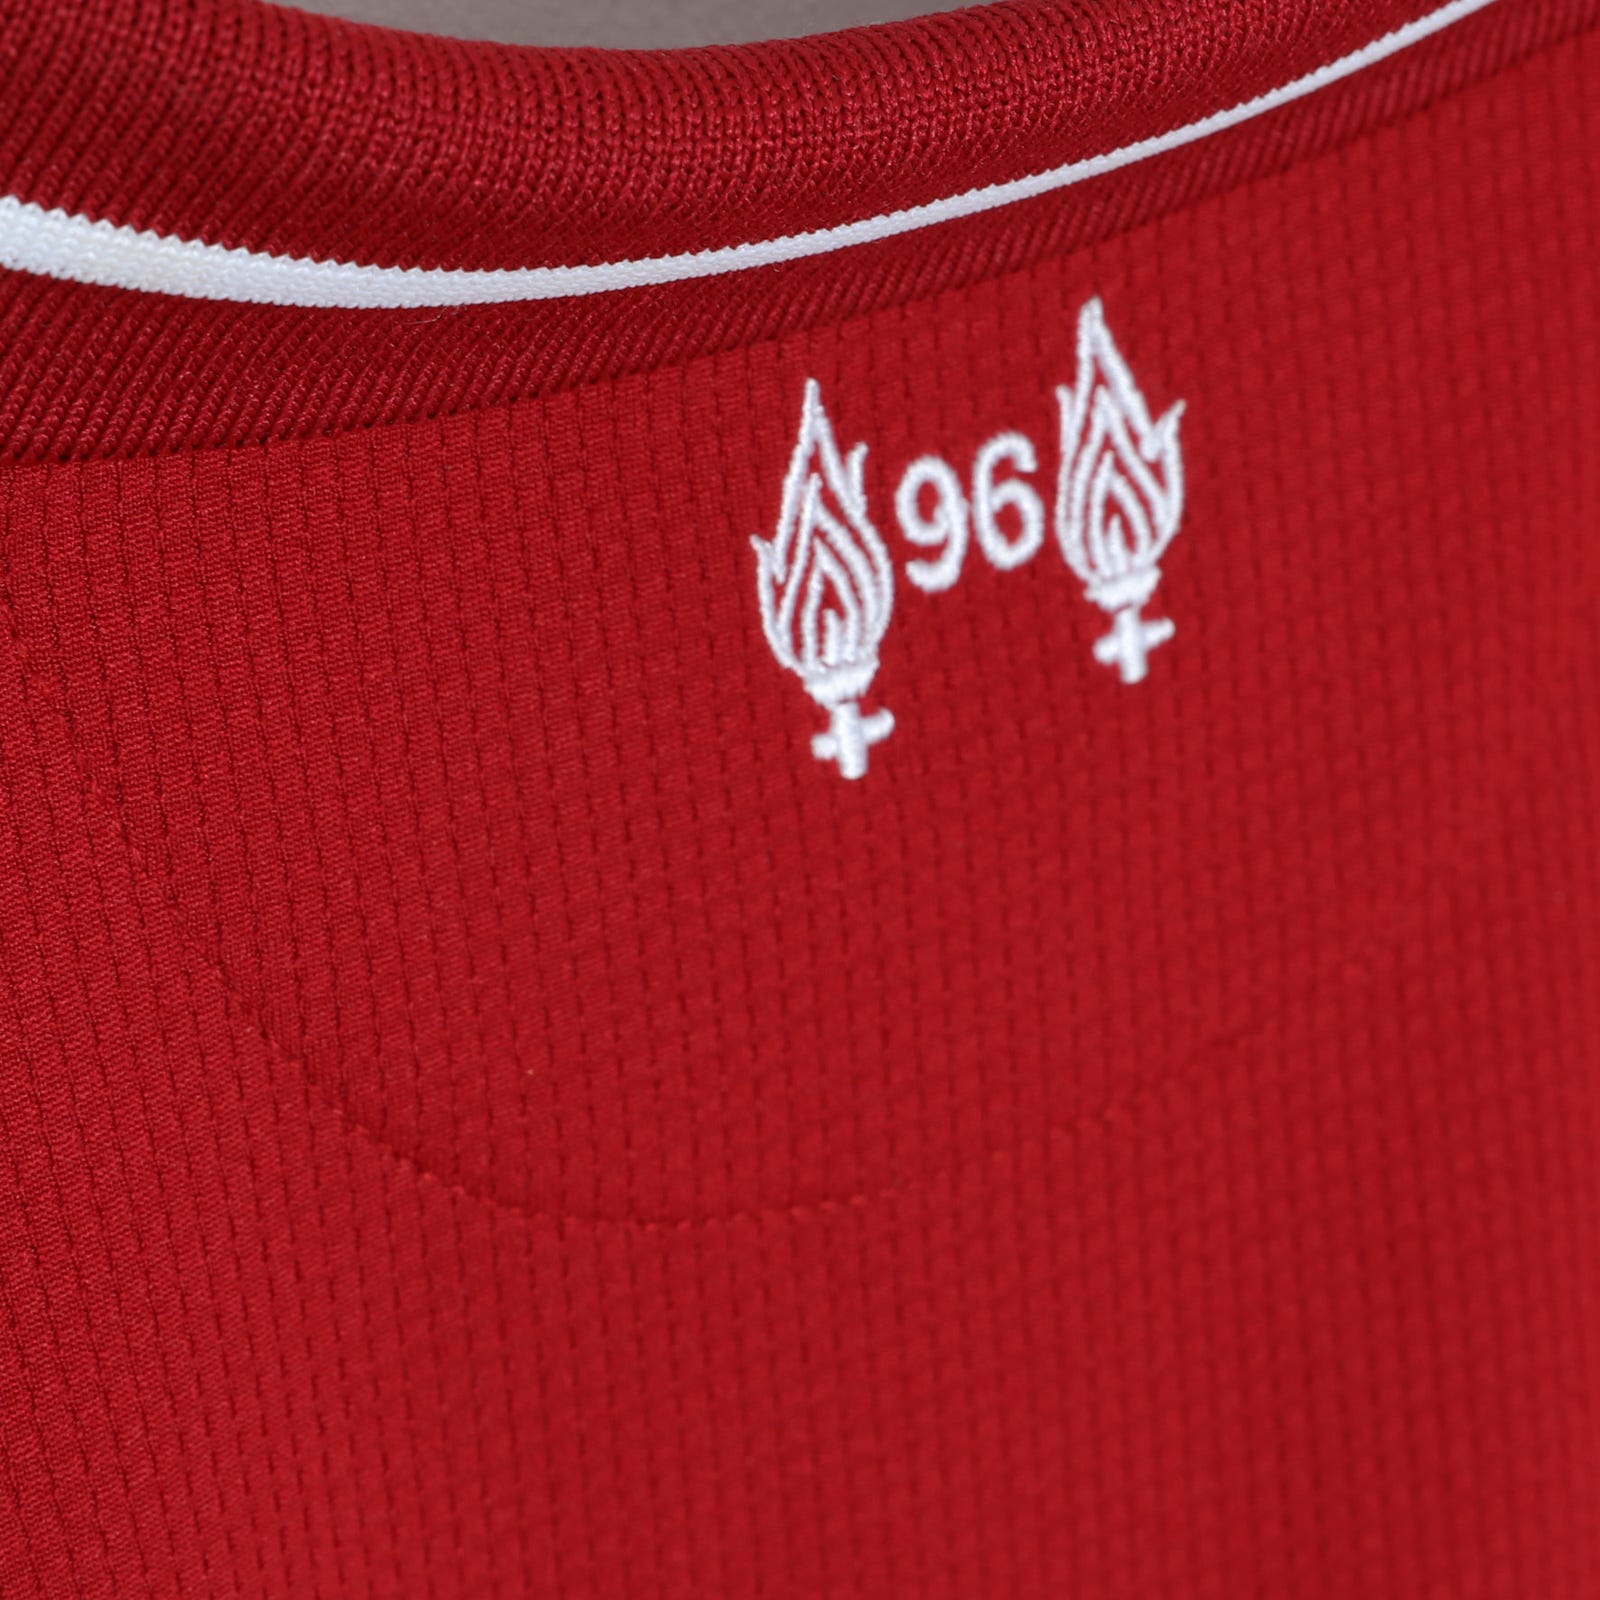 Khám phá từng chi tiết trên áo đấu mới của Liverpool mùa 2018-19 ...